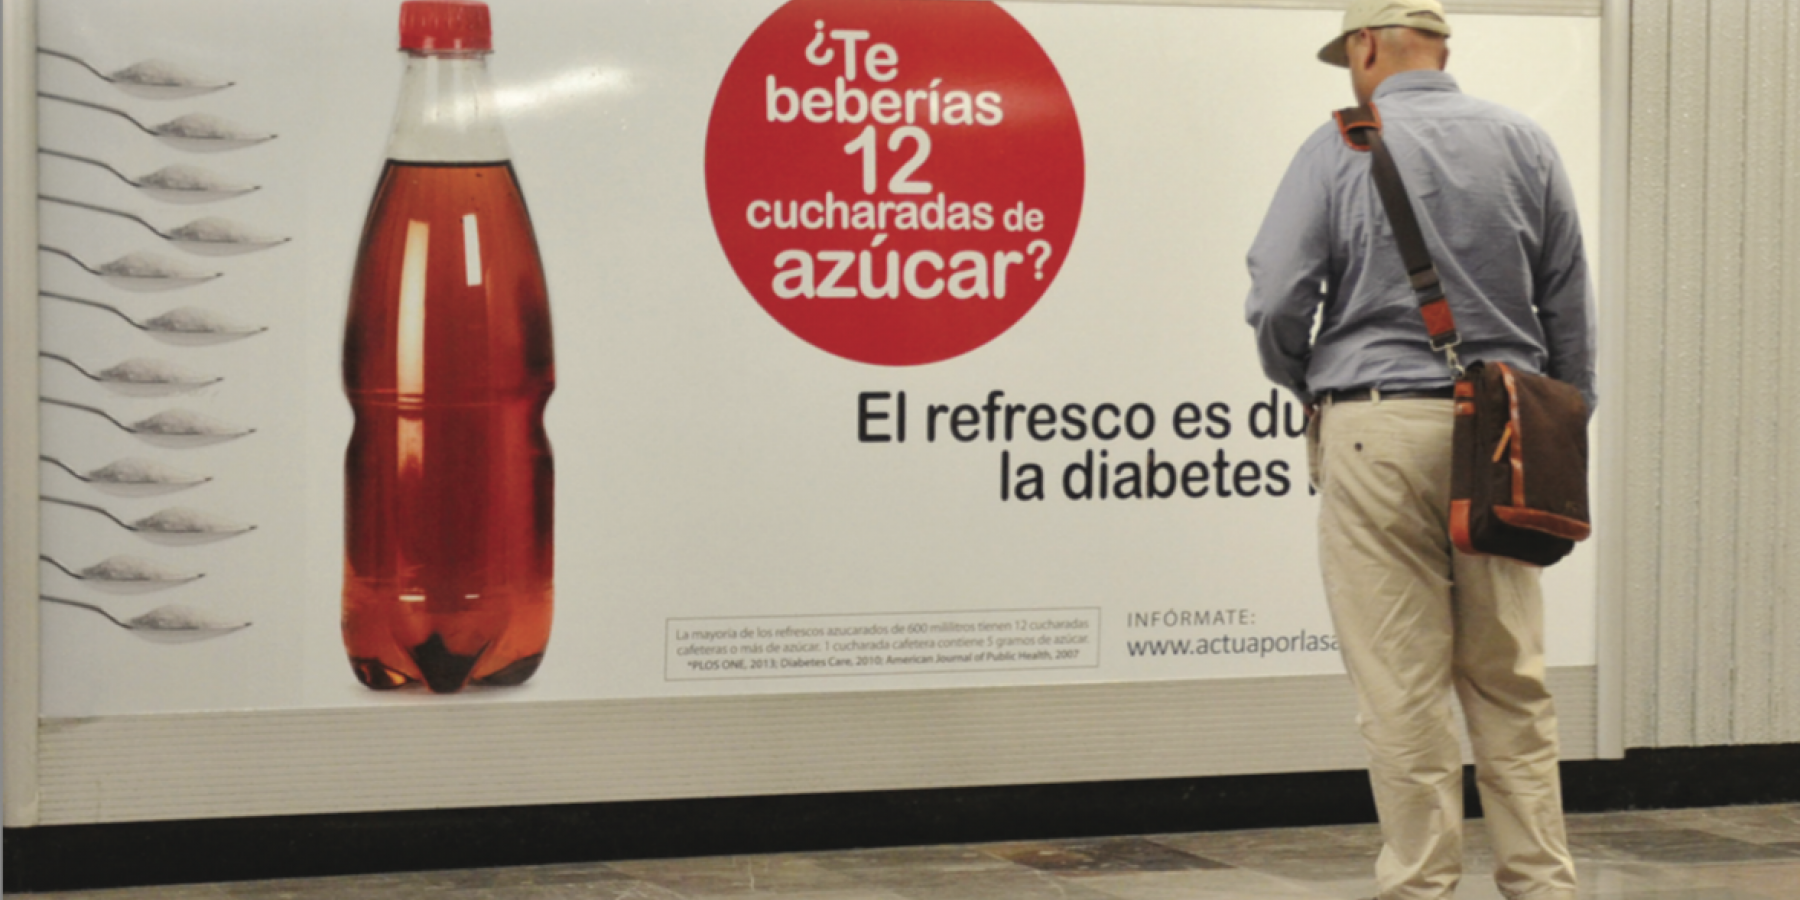 Mexico soda tax